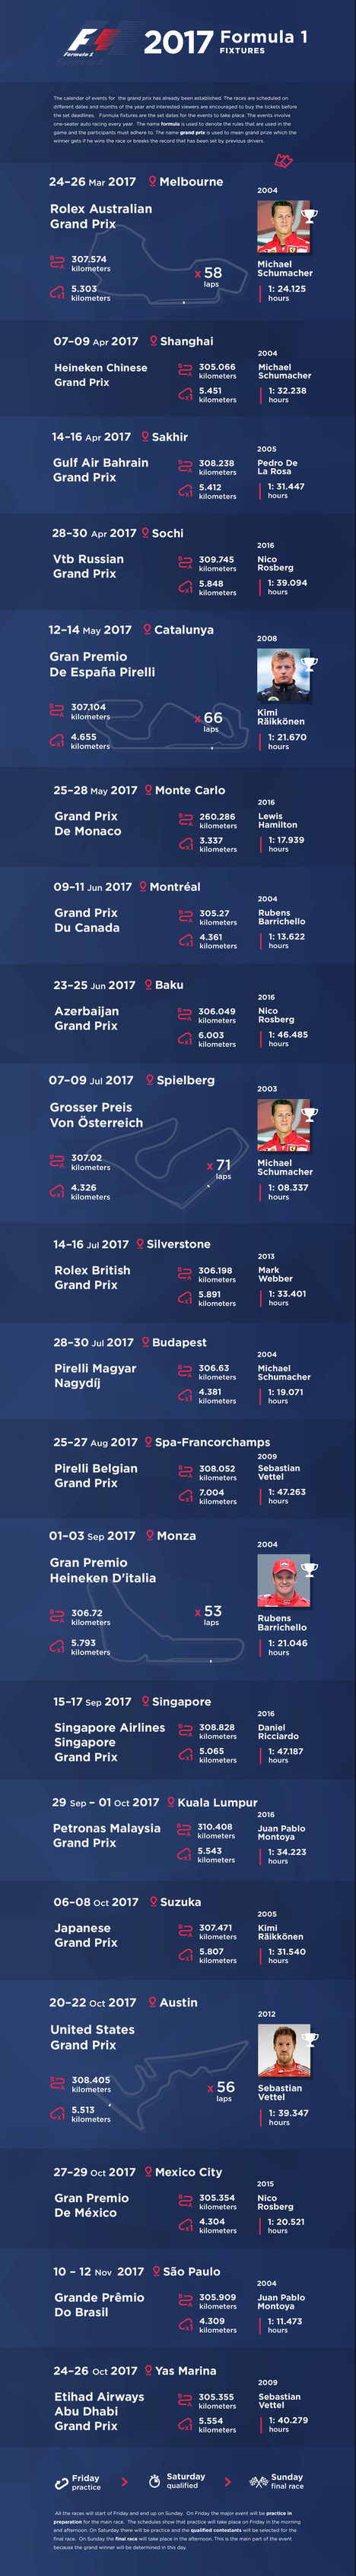  2017 Formula 1 Fixtures